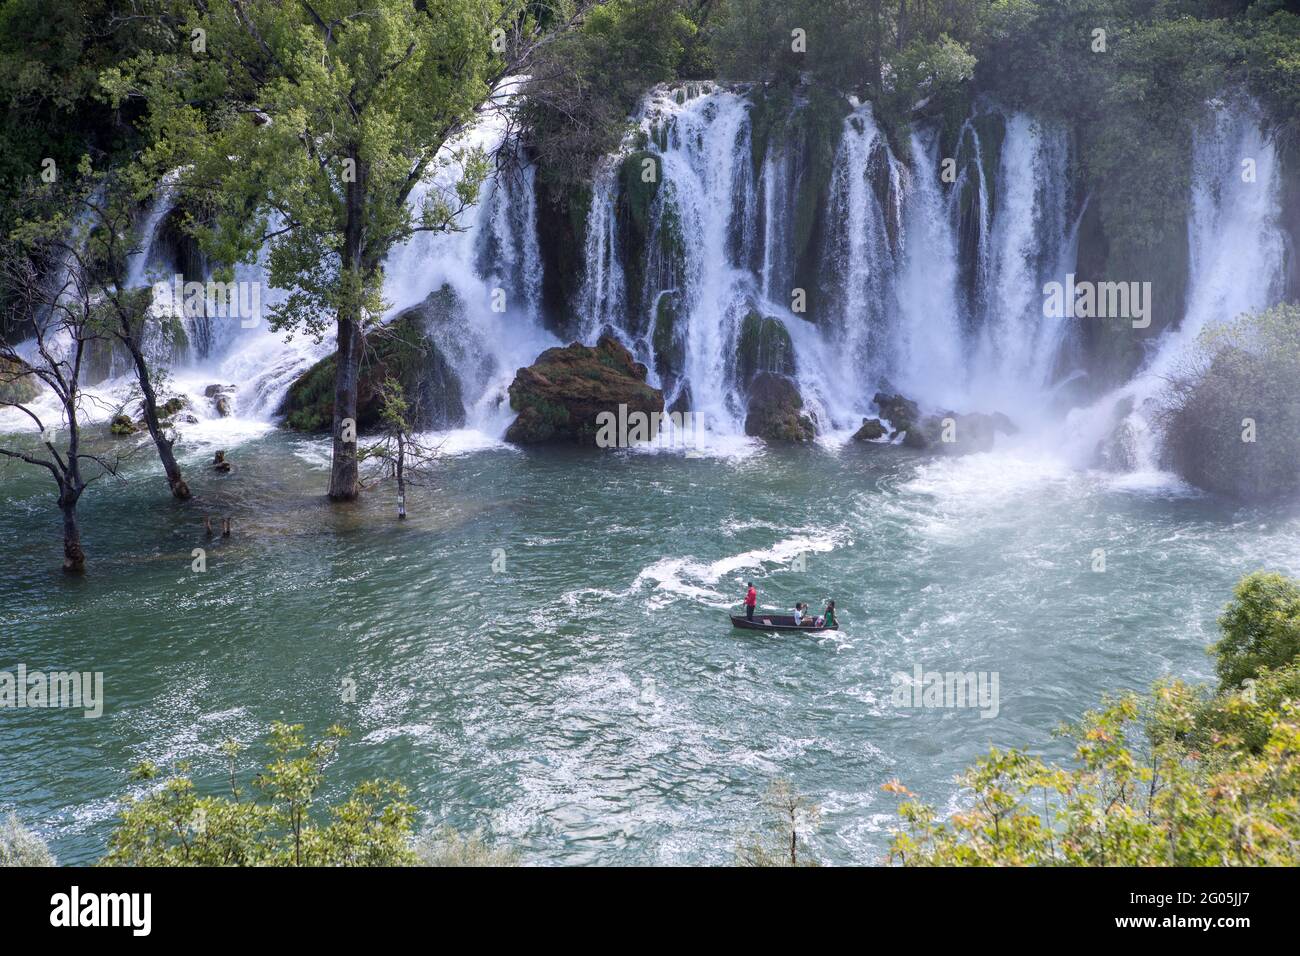 Kravica or Kravice waterfalls, Herzegovina, Bosnia and Herzegovina Stock Photo